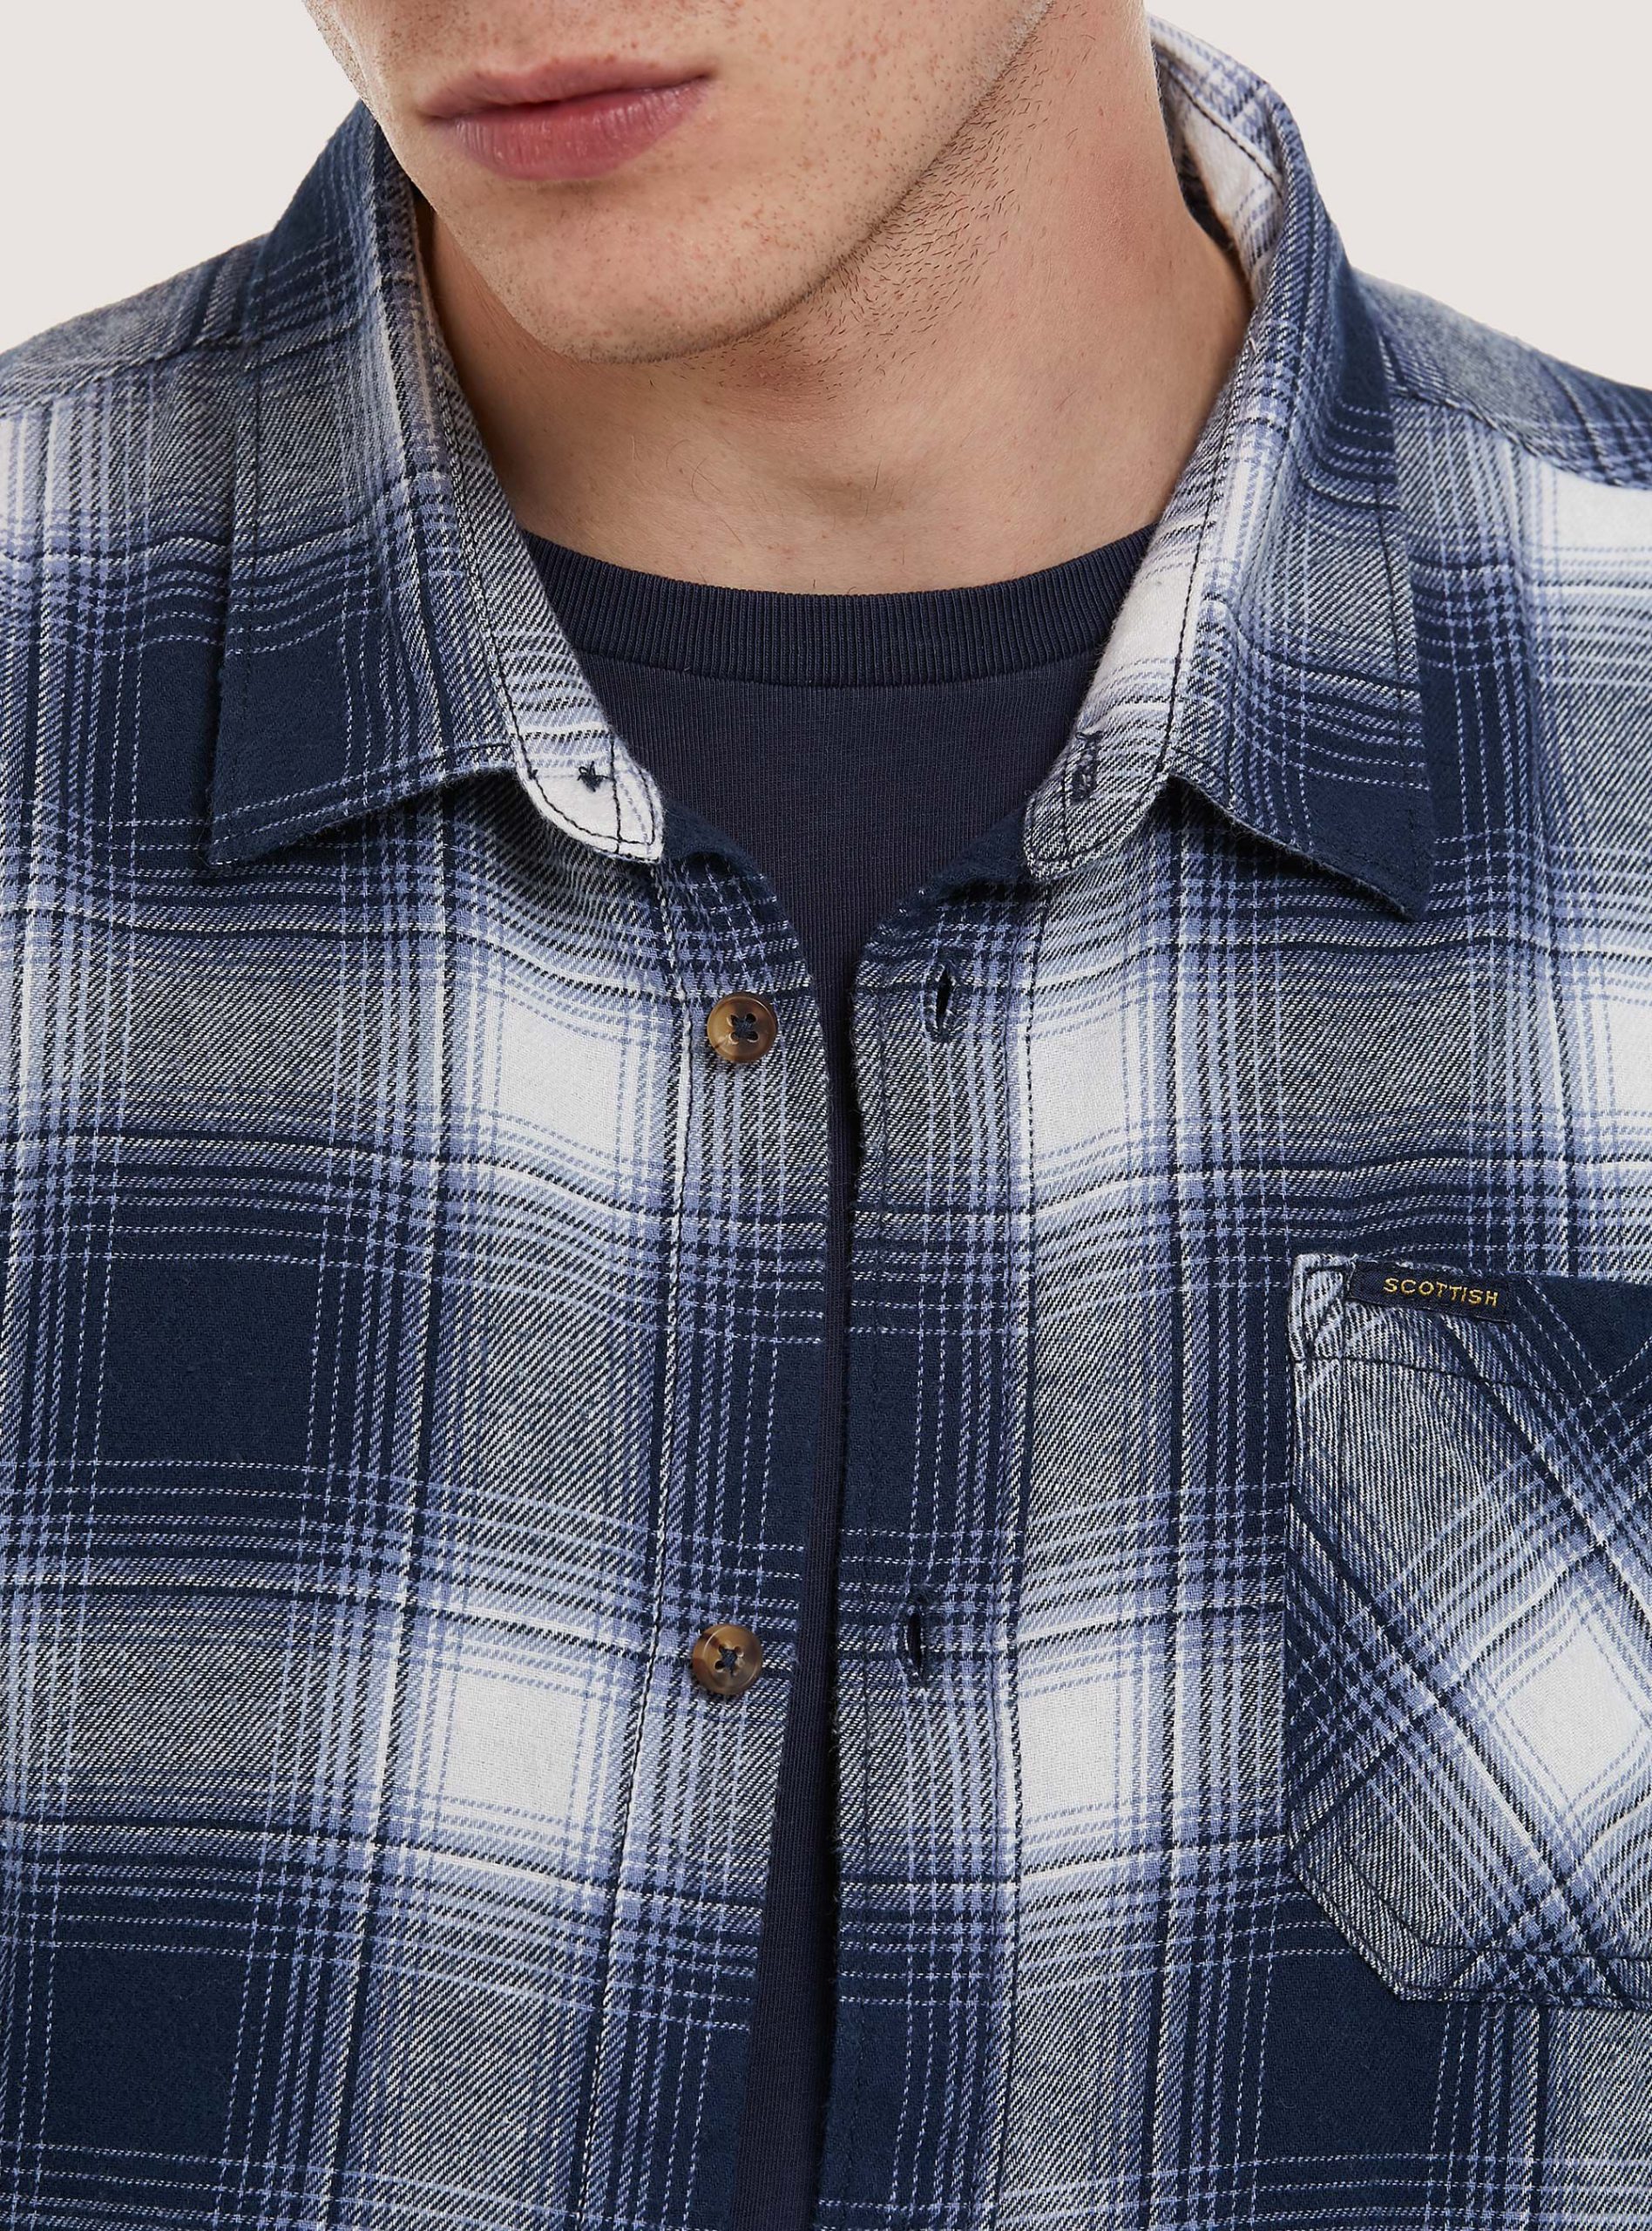 Alcott Reduzierter Preis Männer Hemden Checked Flannel Shirt Bl1 Blue Dark – 2